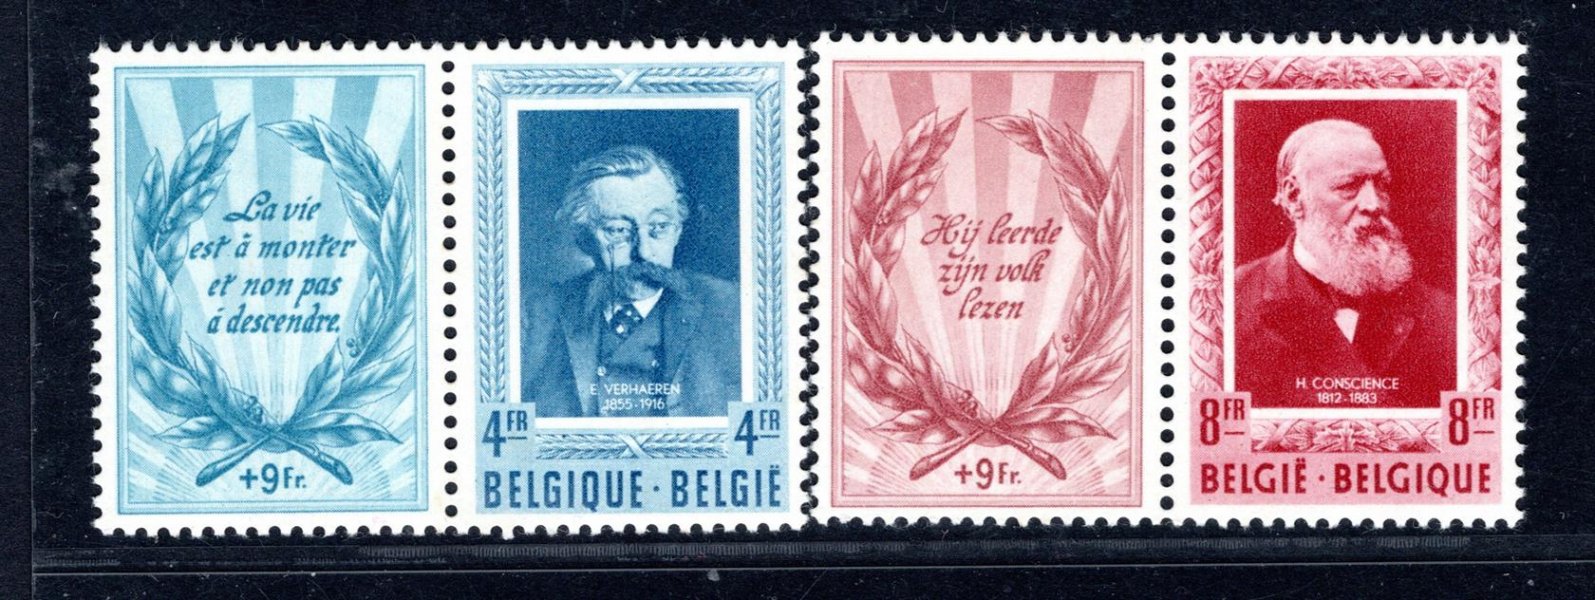 Belgie - Mi. 947 - 8 Zf, spisovatelé